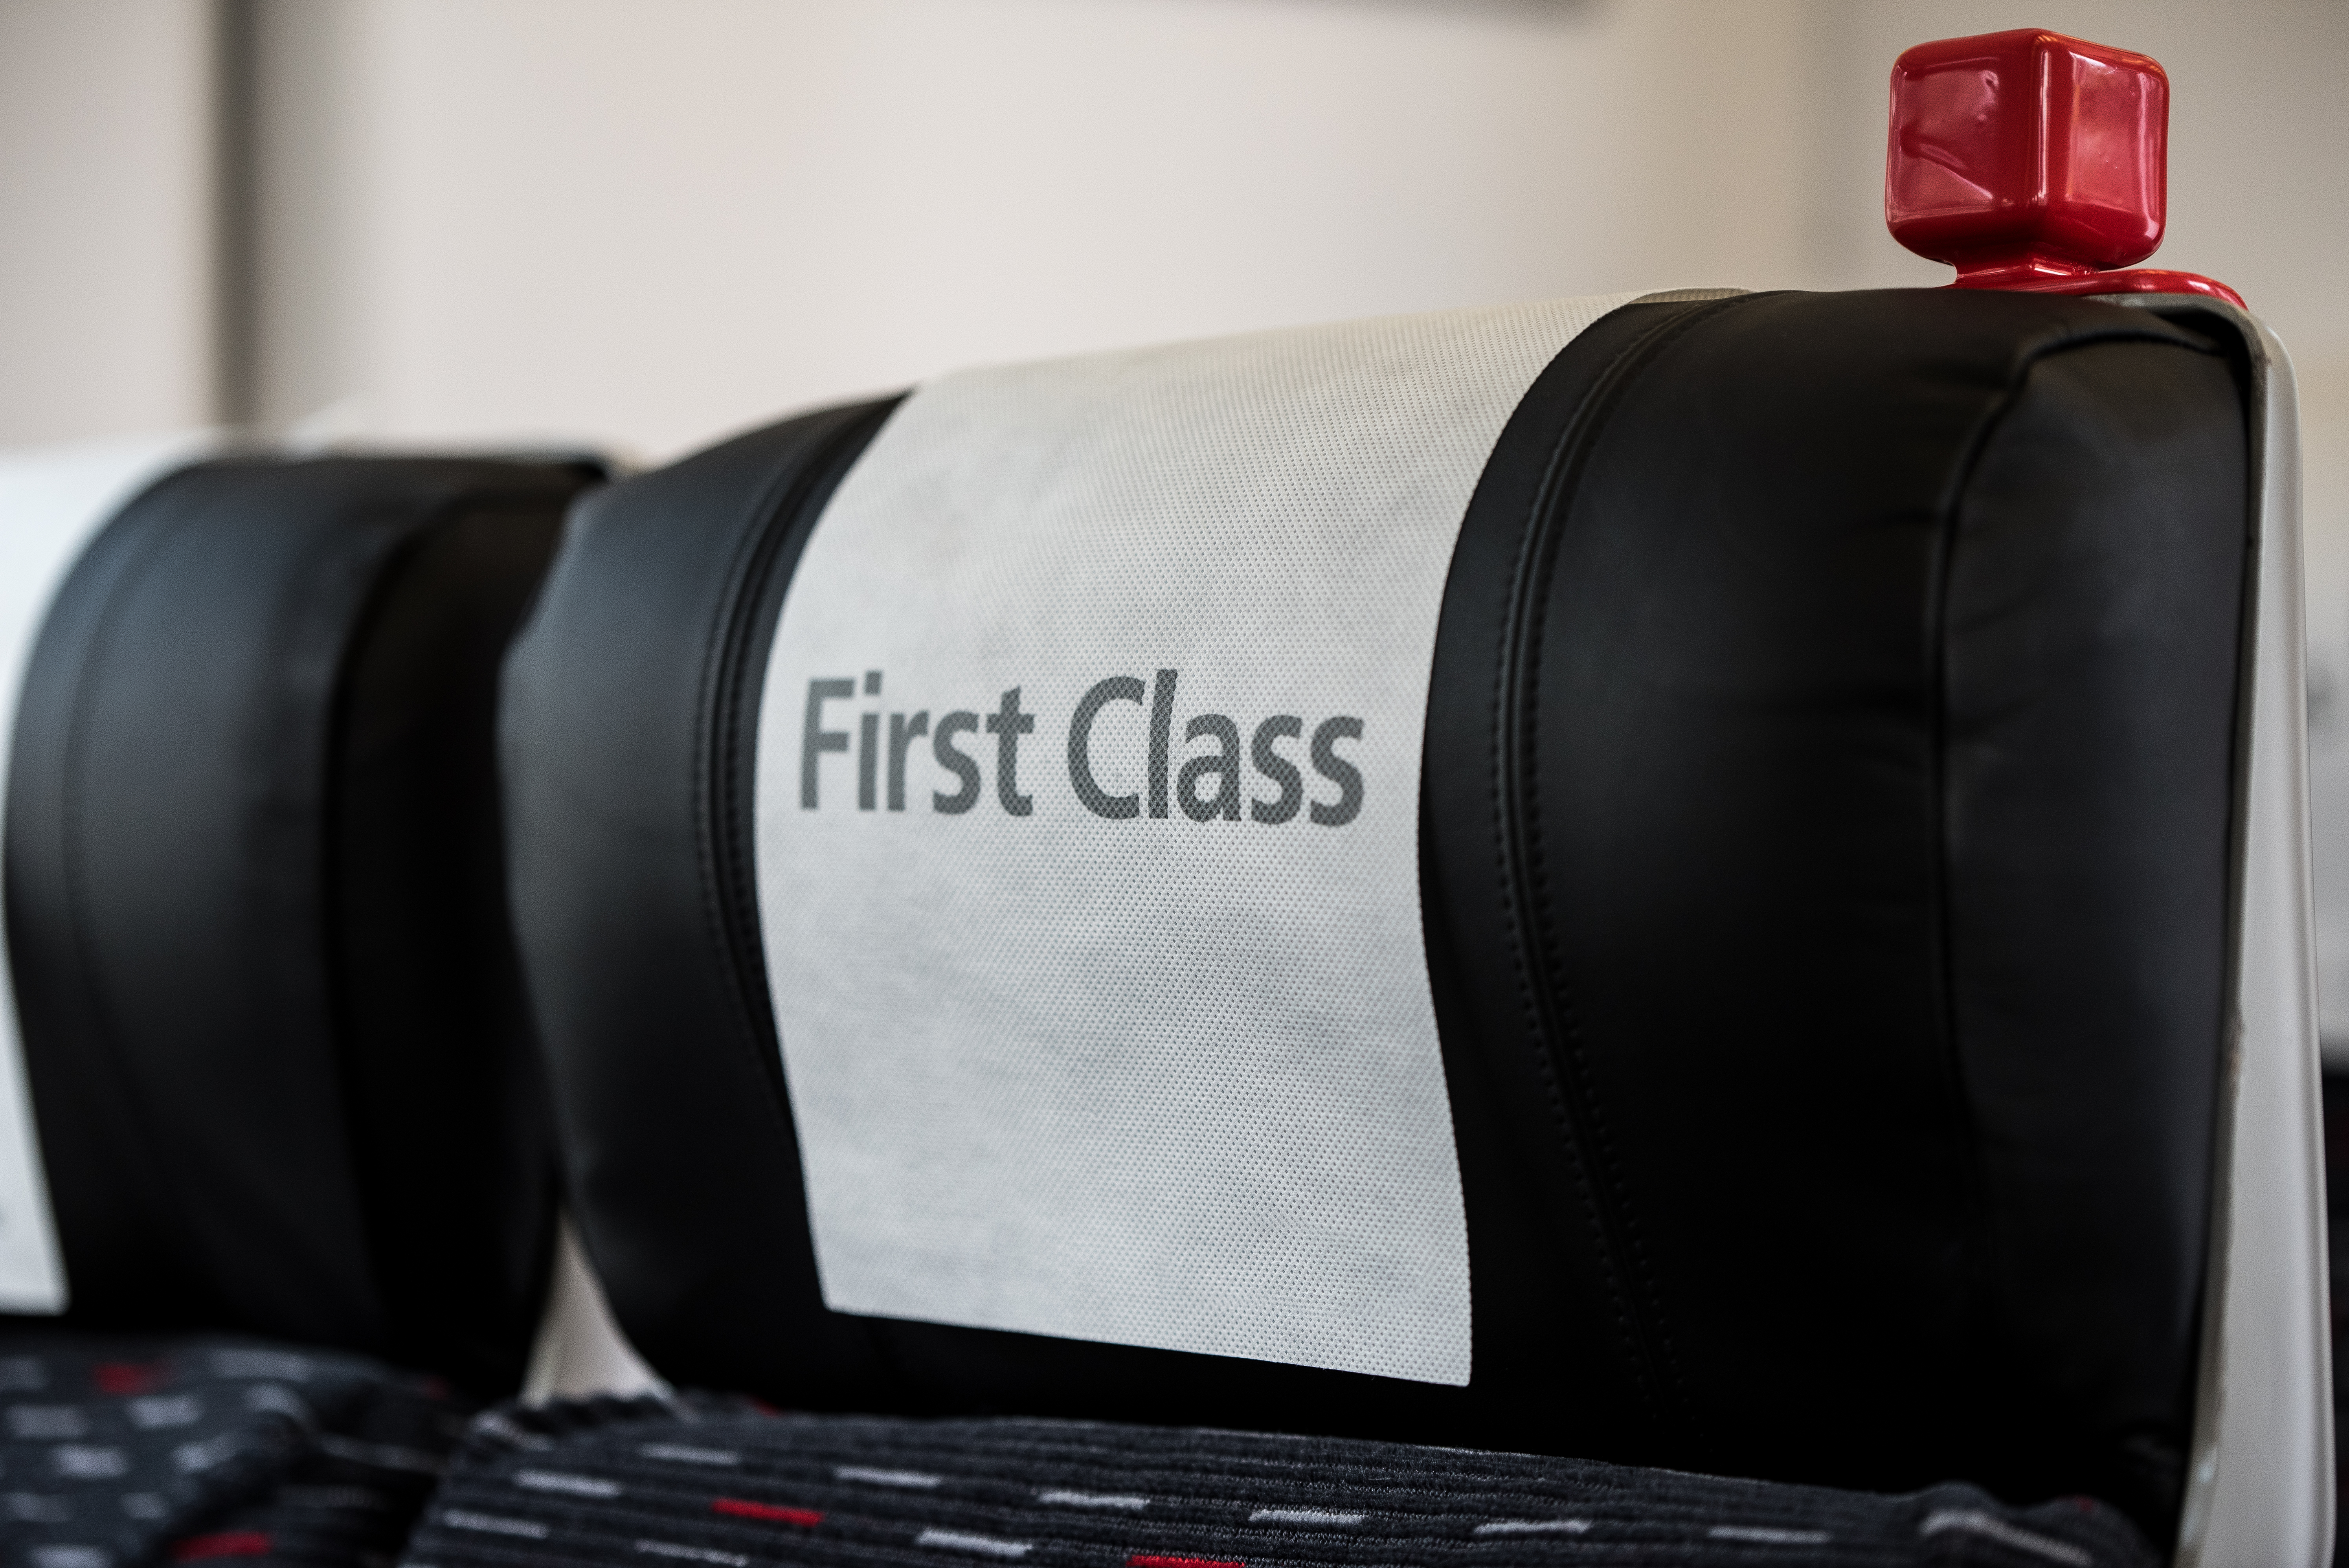 Un asiento de tren con un cartel que dice "Primera Clase" | Foto: Shutterstock